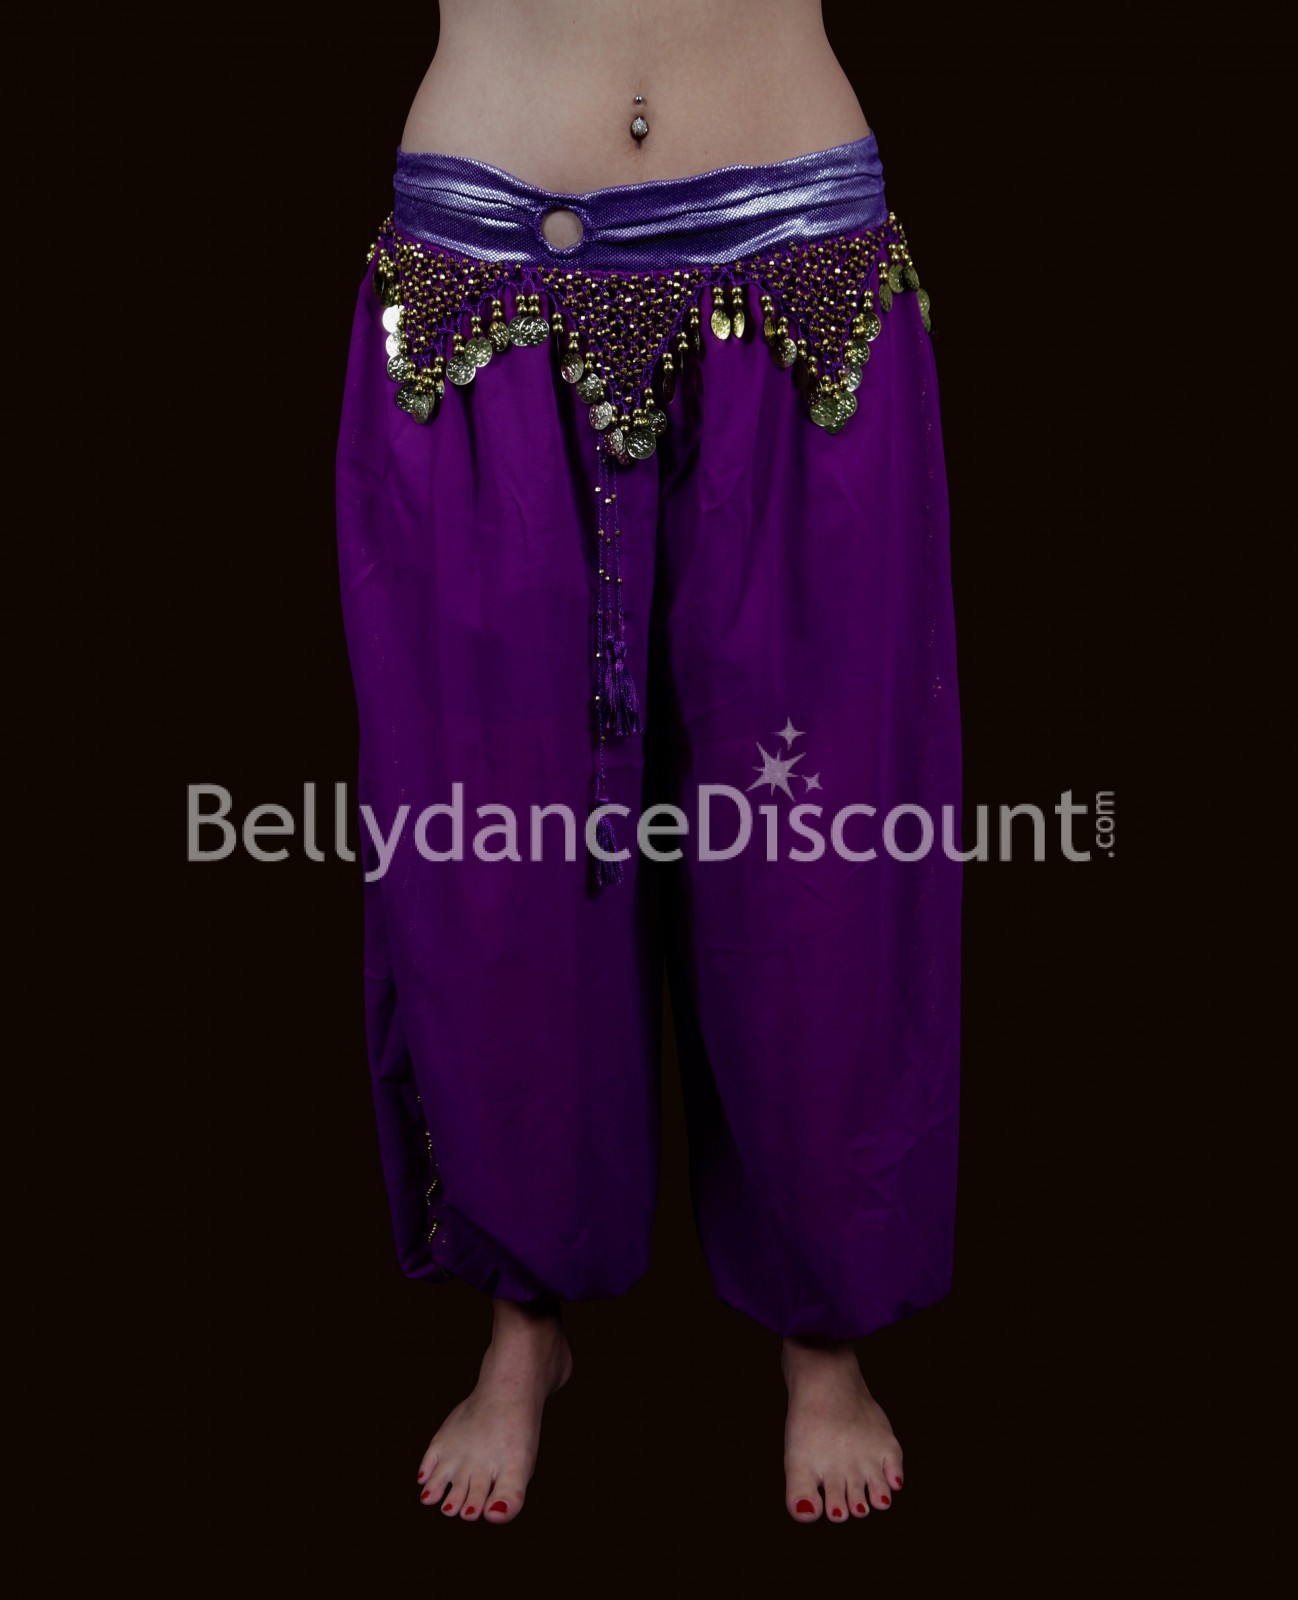 Large Bellydance pants purple - 23,90